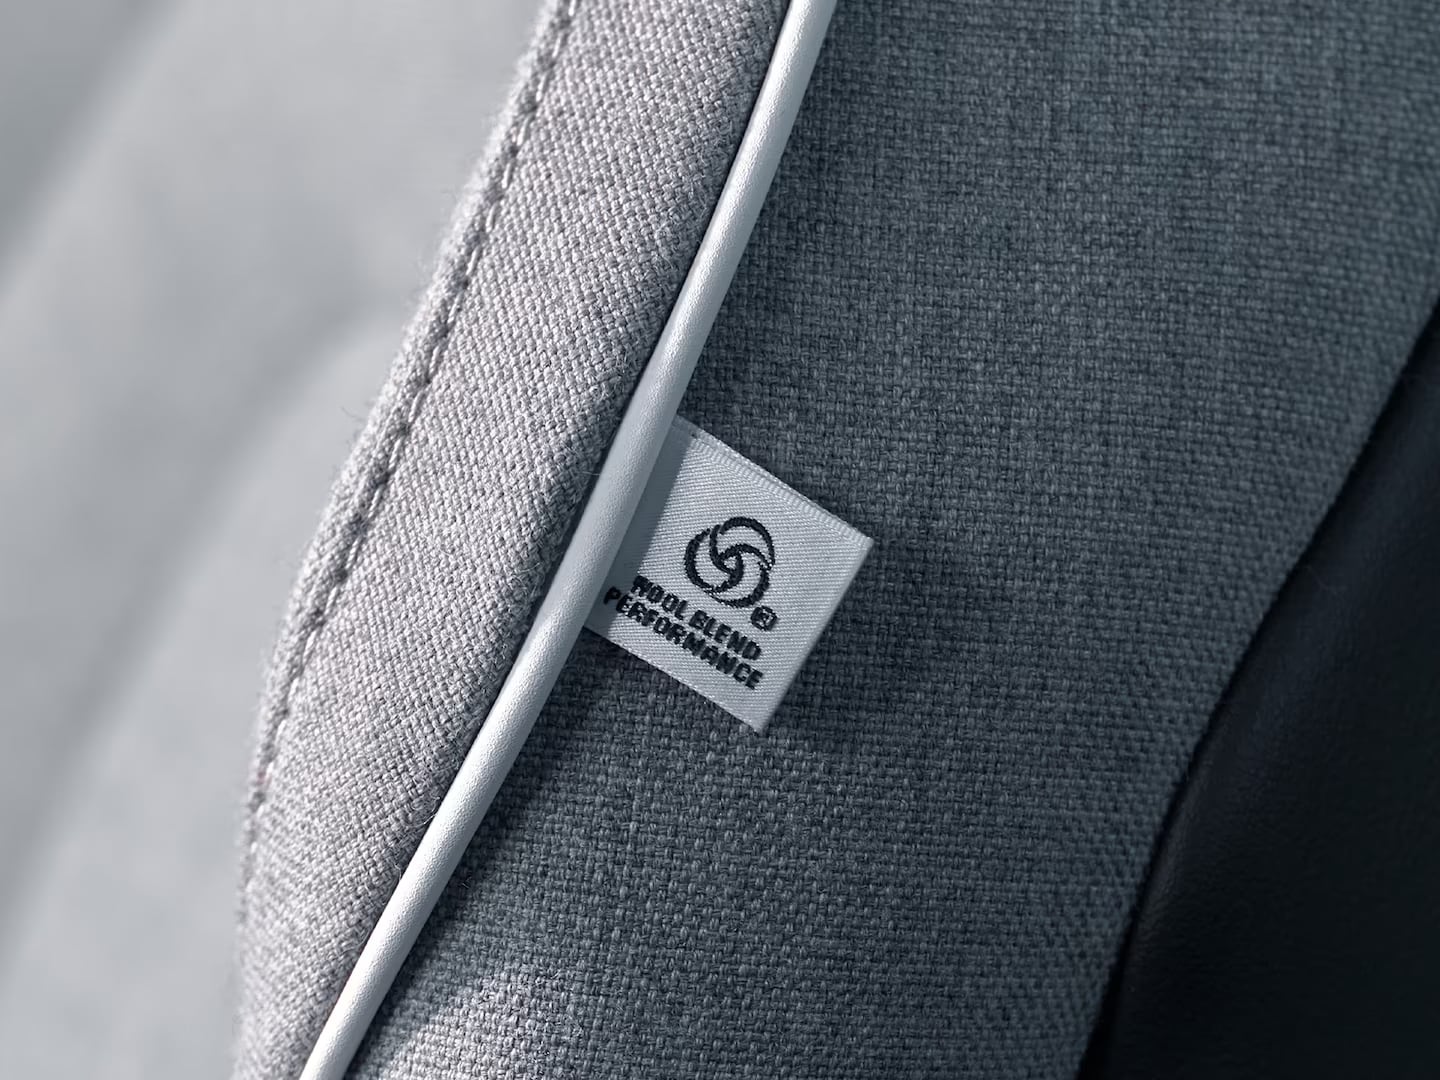 Indvendigt nærbillede af betrækket Tailored Wool Blend i Volvo XC90 plug-in hybrid.